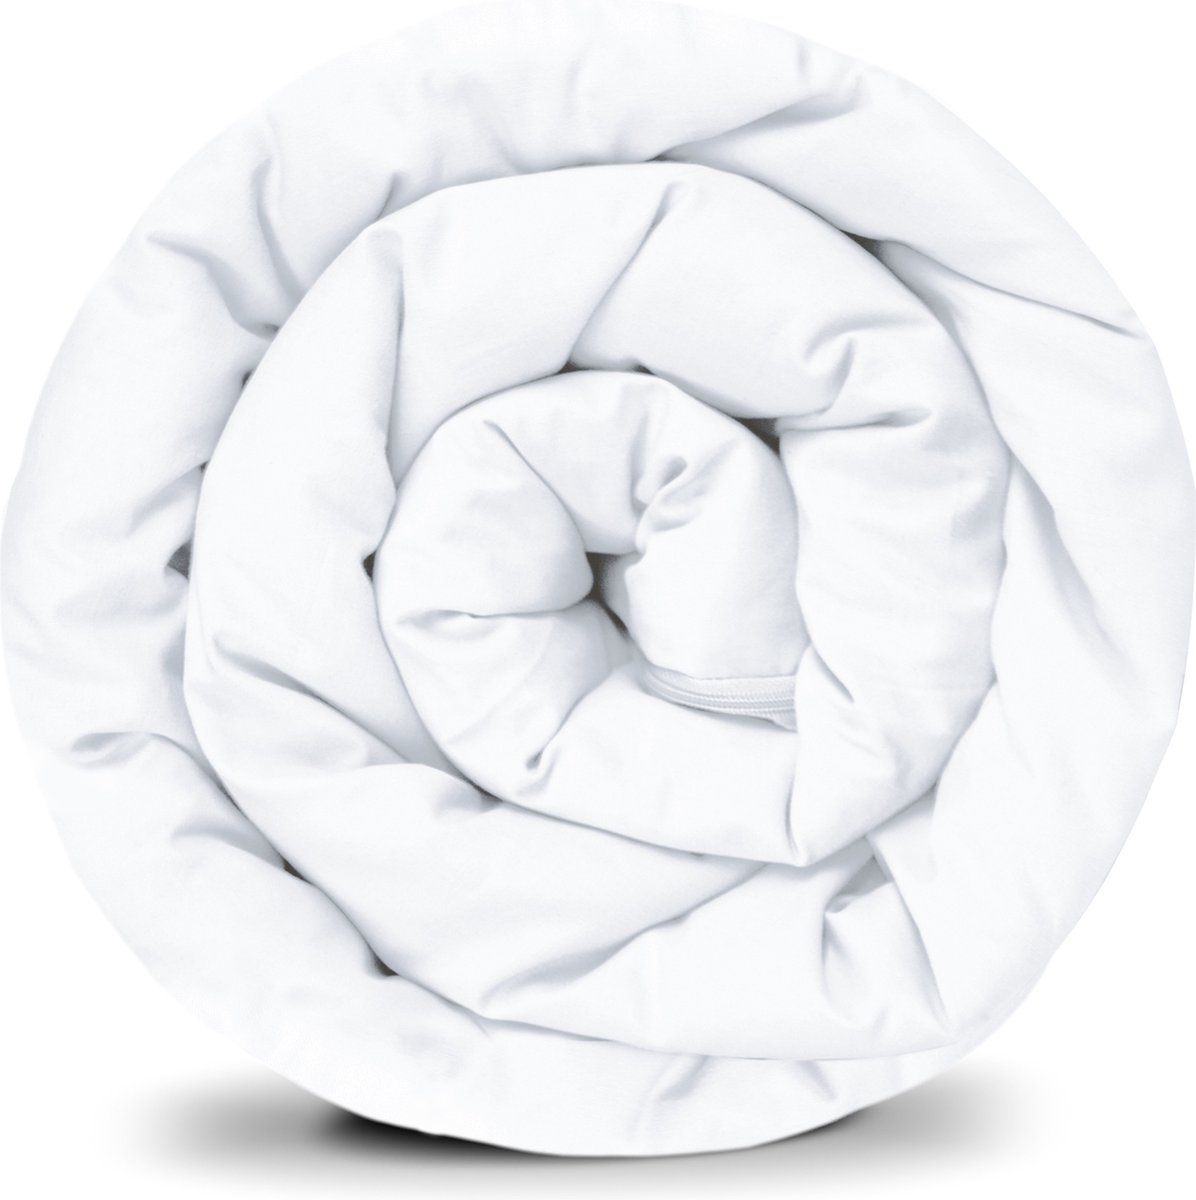 BALANCE Basic verzwaarde dekenhoes in wit katoen ritssysteem zomerhoes voor volwassenen/tieners voor een betere slaap afmeting: 135x200 cm